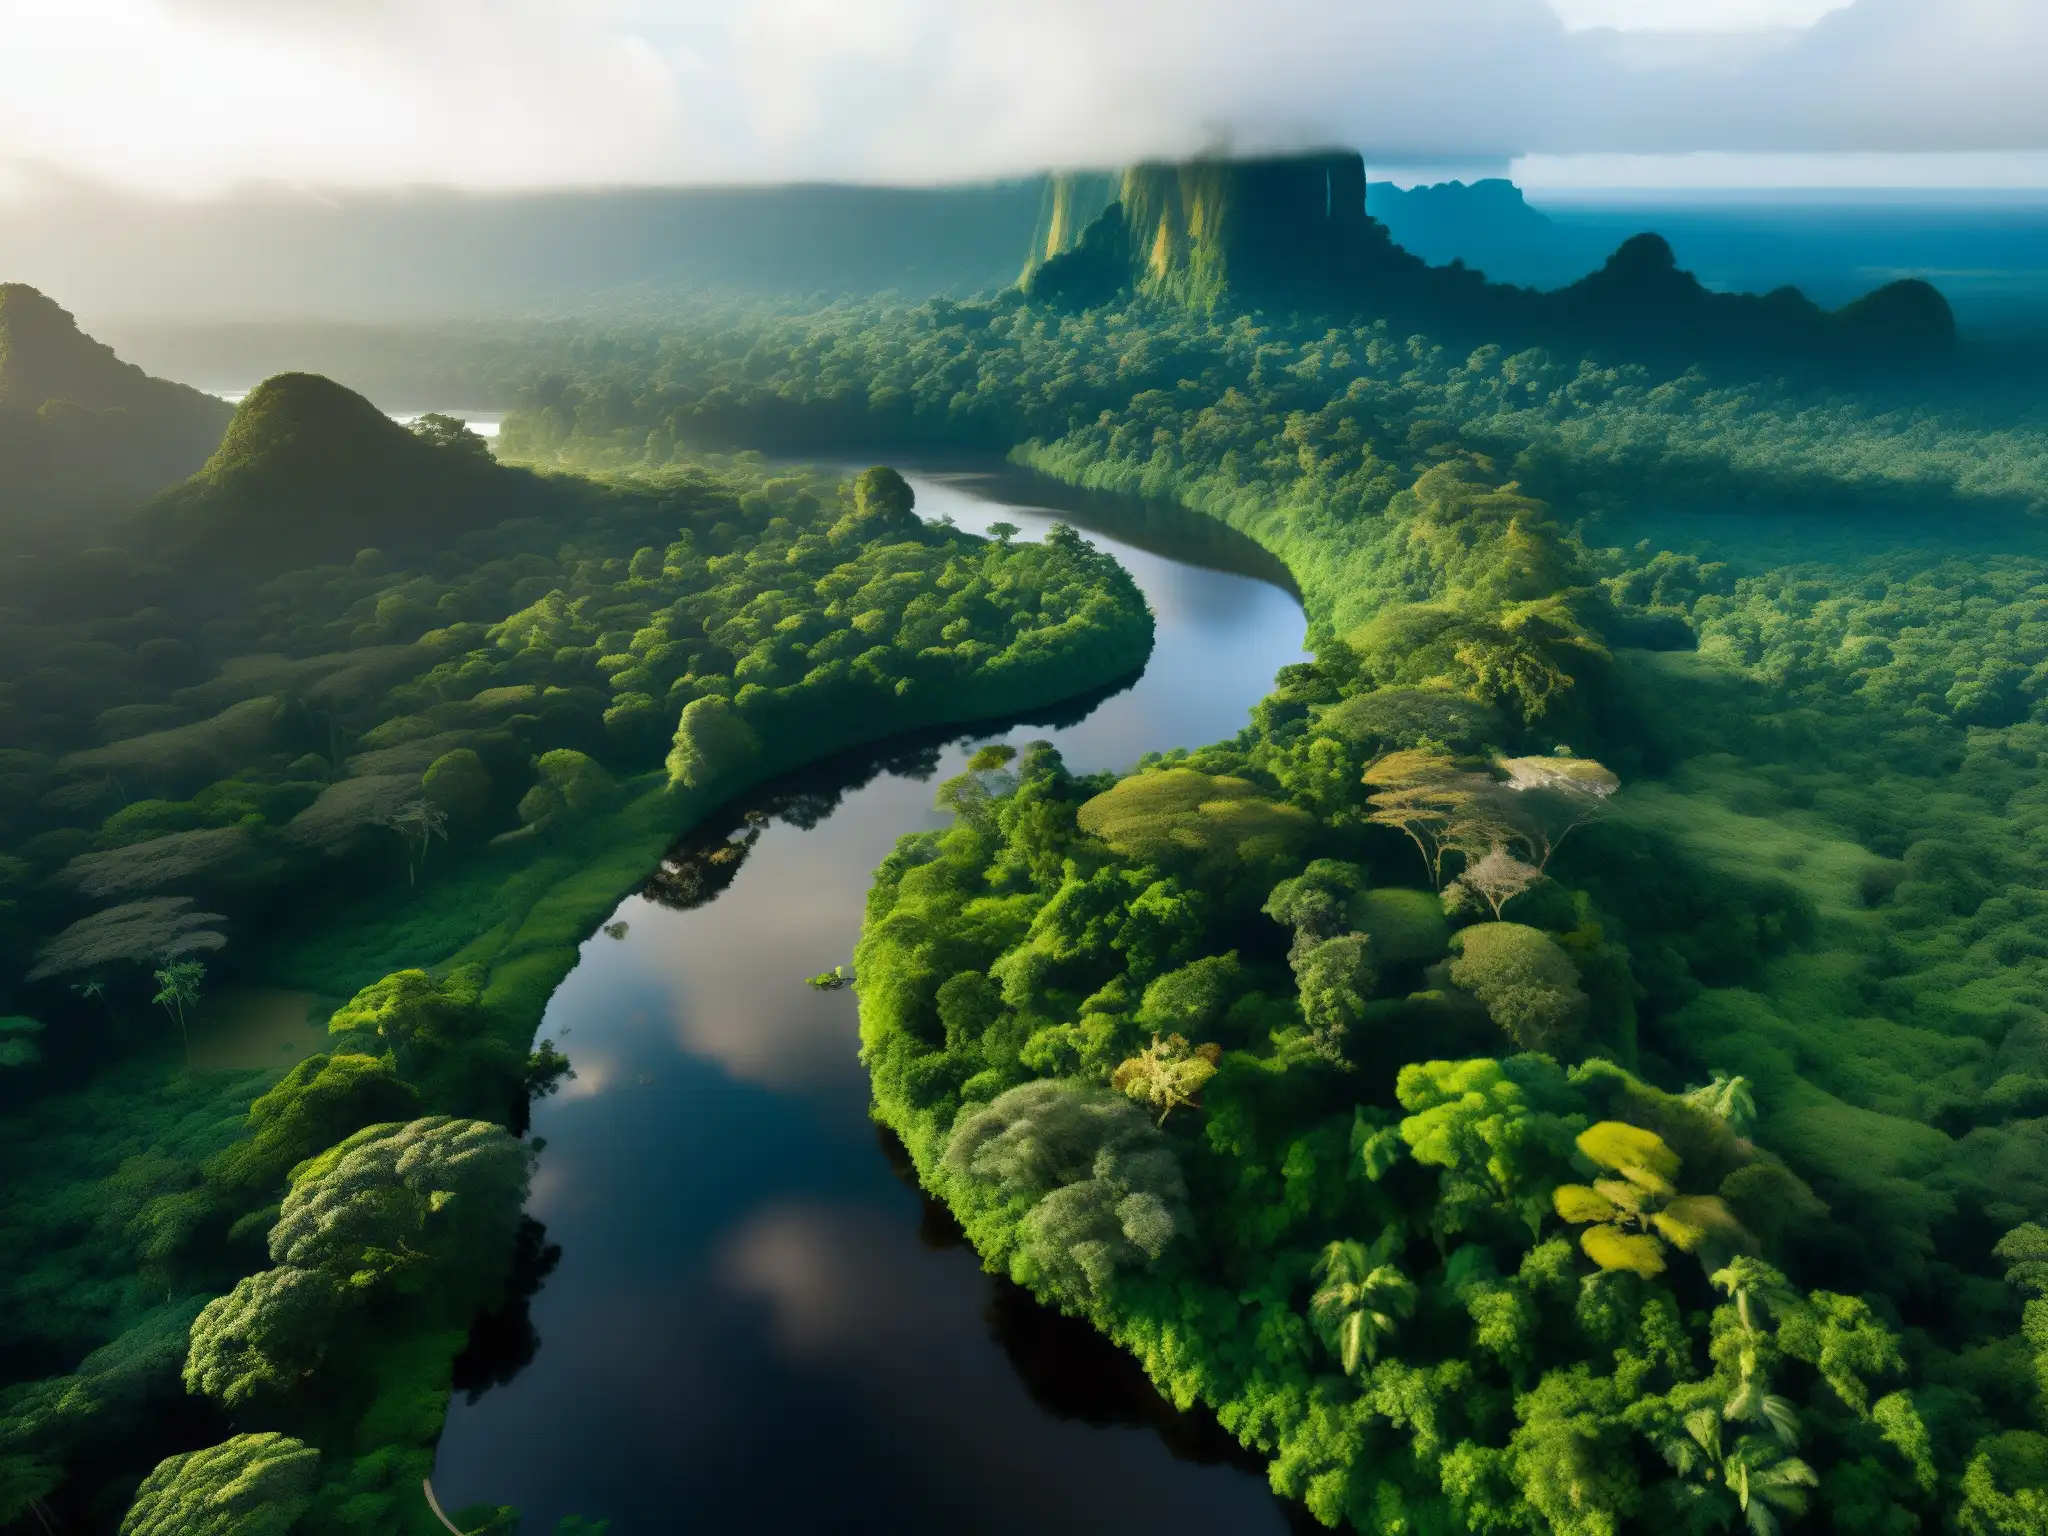 Vista serena del río Amazonas rodeado de exuberante vegetación y misteriosa neblina, evocando la leyenda de La Madre del Agua en el Amazonas